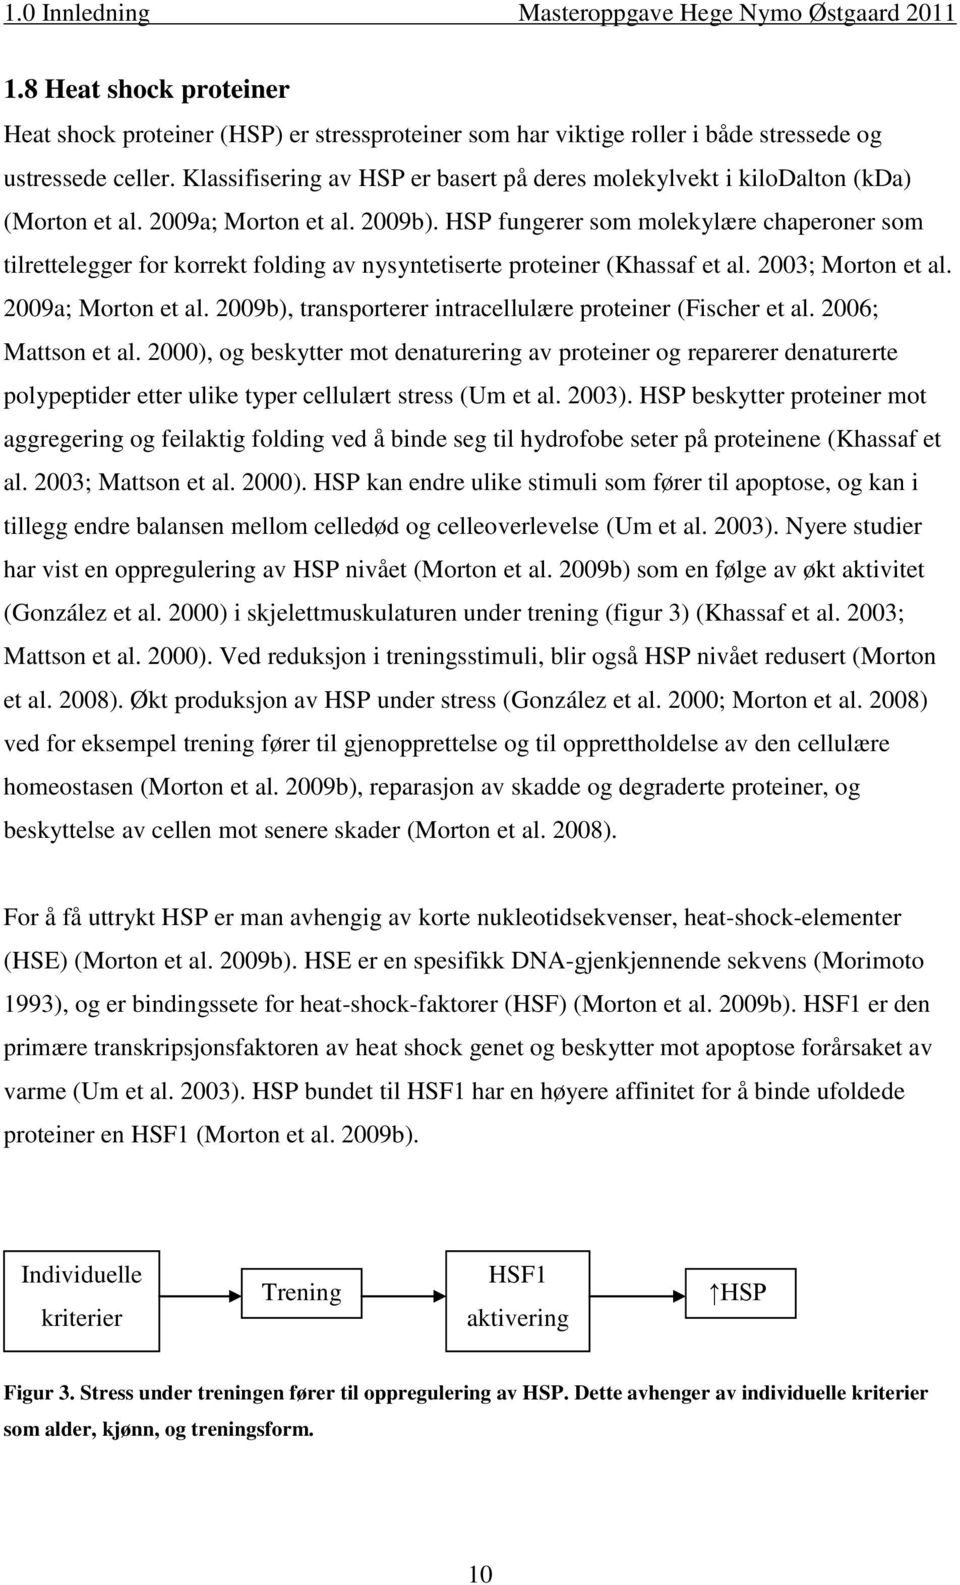 HSP fungerer som molekylære chaperoner som tilrettelegger for korrekt folding av nysyntetiserte proteiner (Khassaf et al. 2003; Morton et al. 2009a; Morton et al.